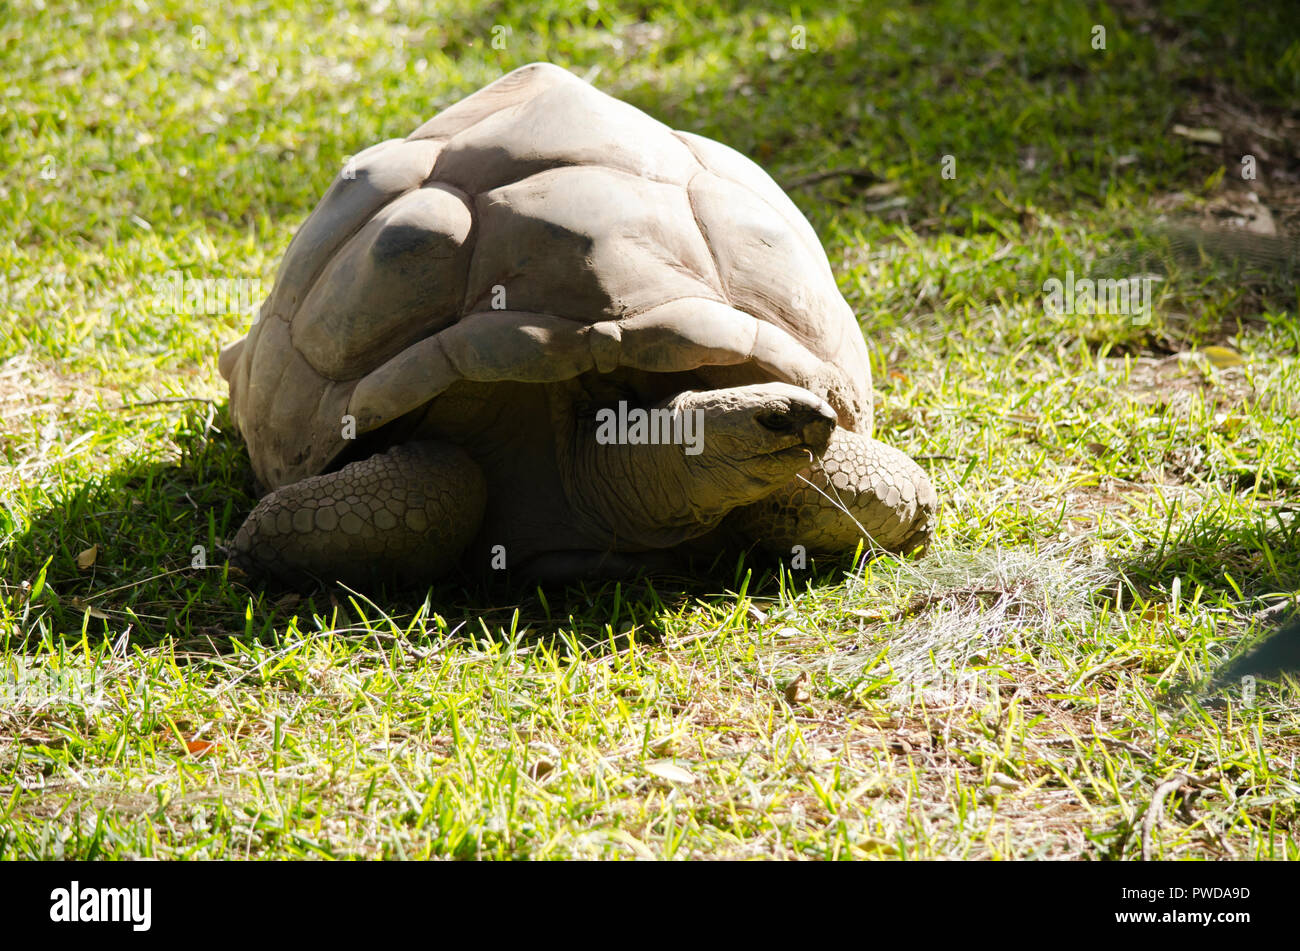 La tortue géante est de marcher sur l'herbe Banque D'Images